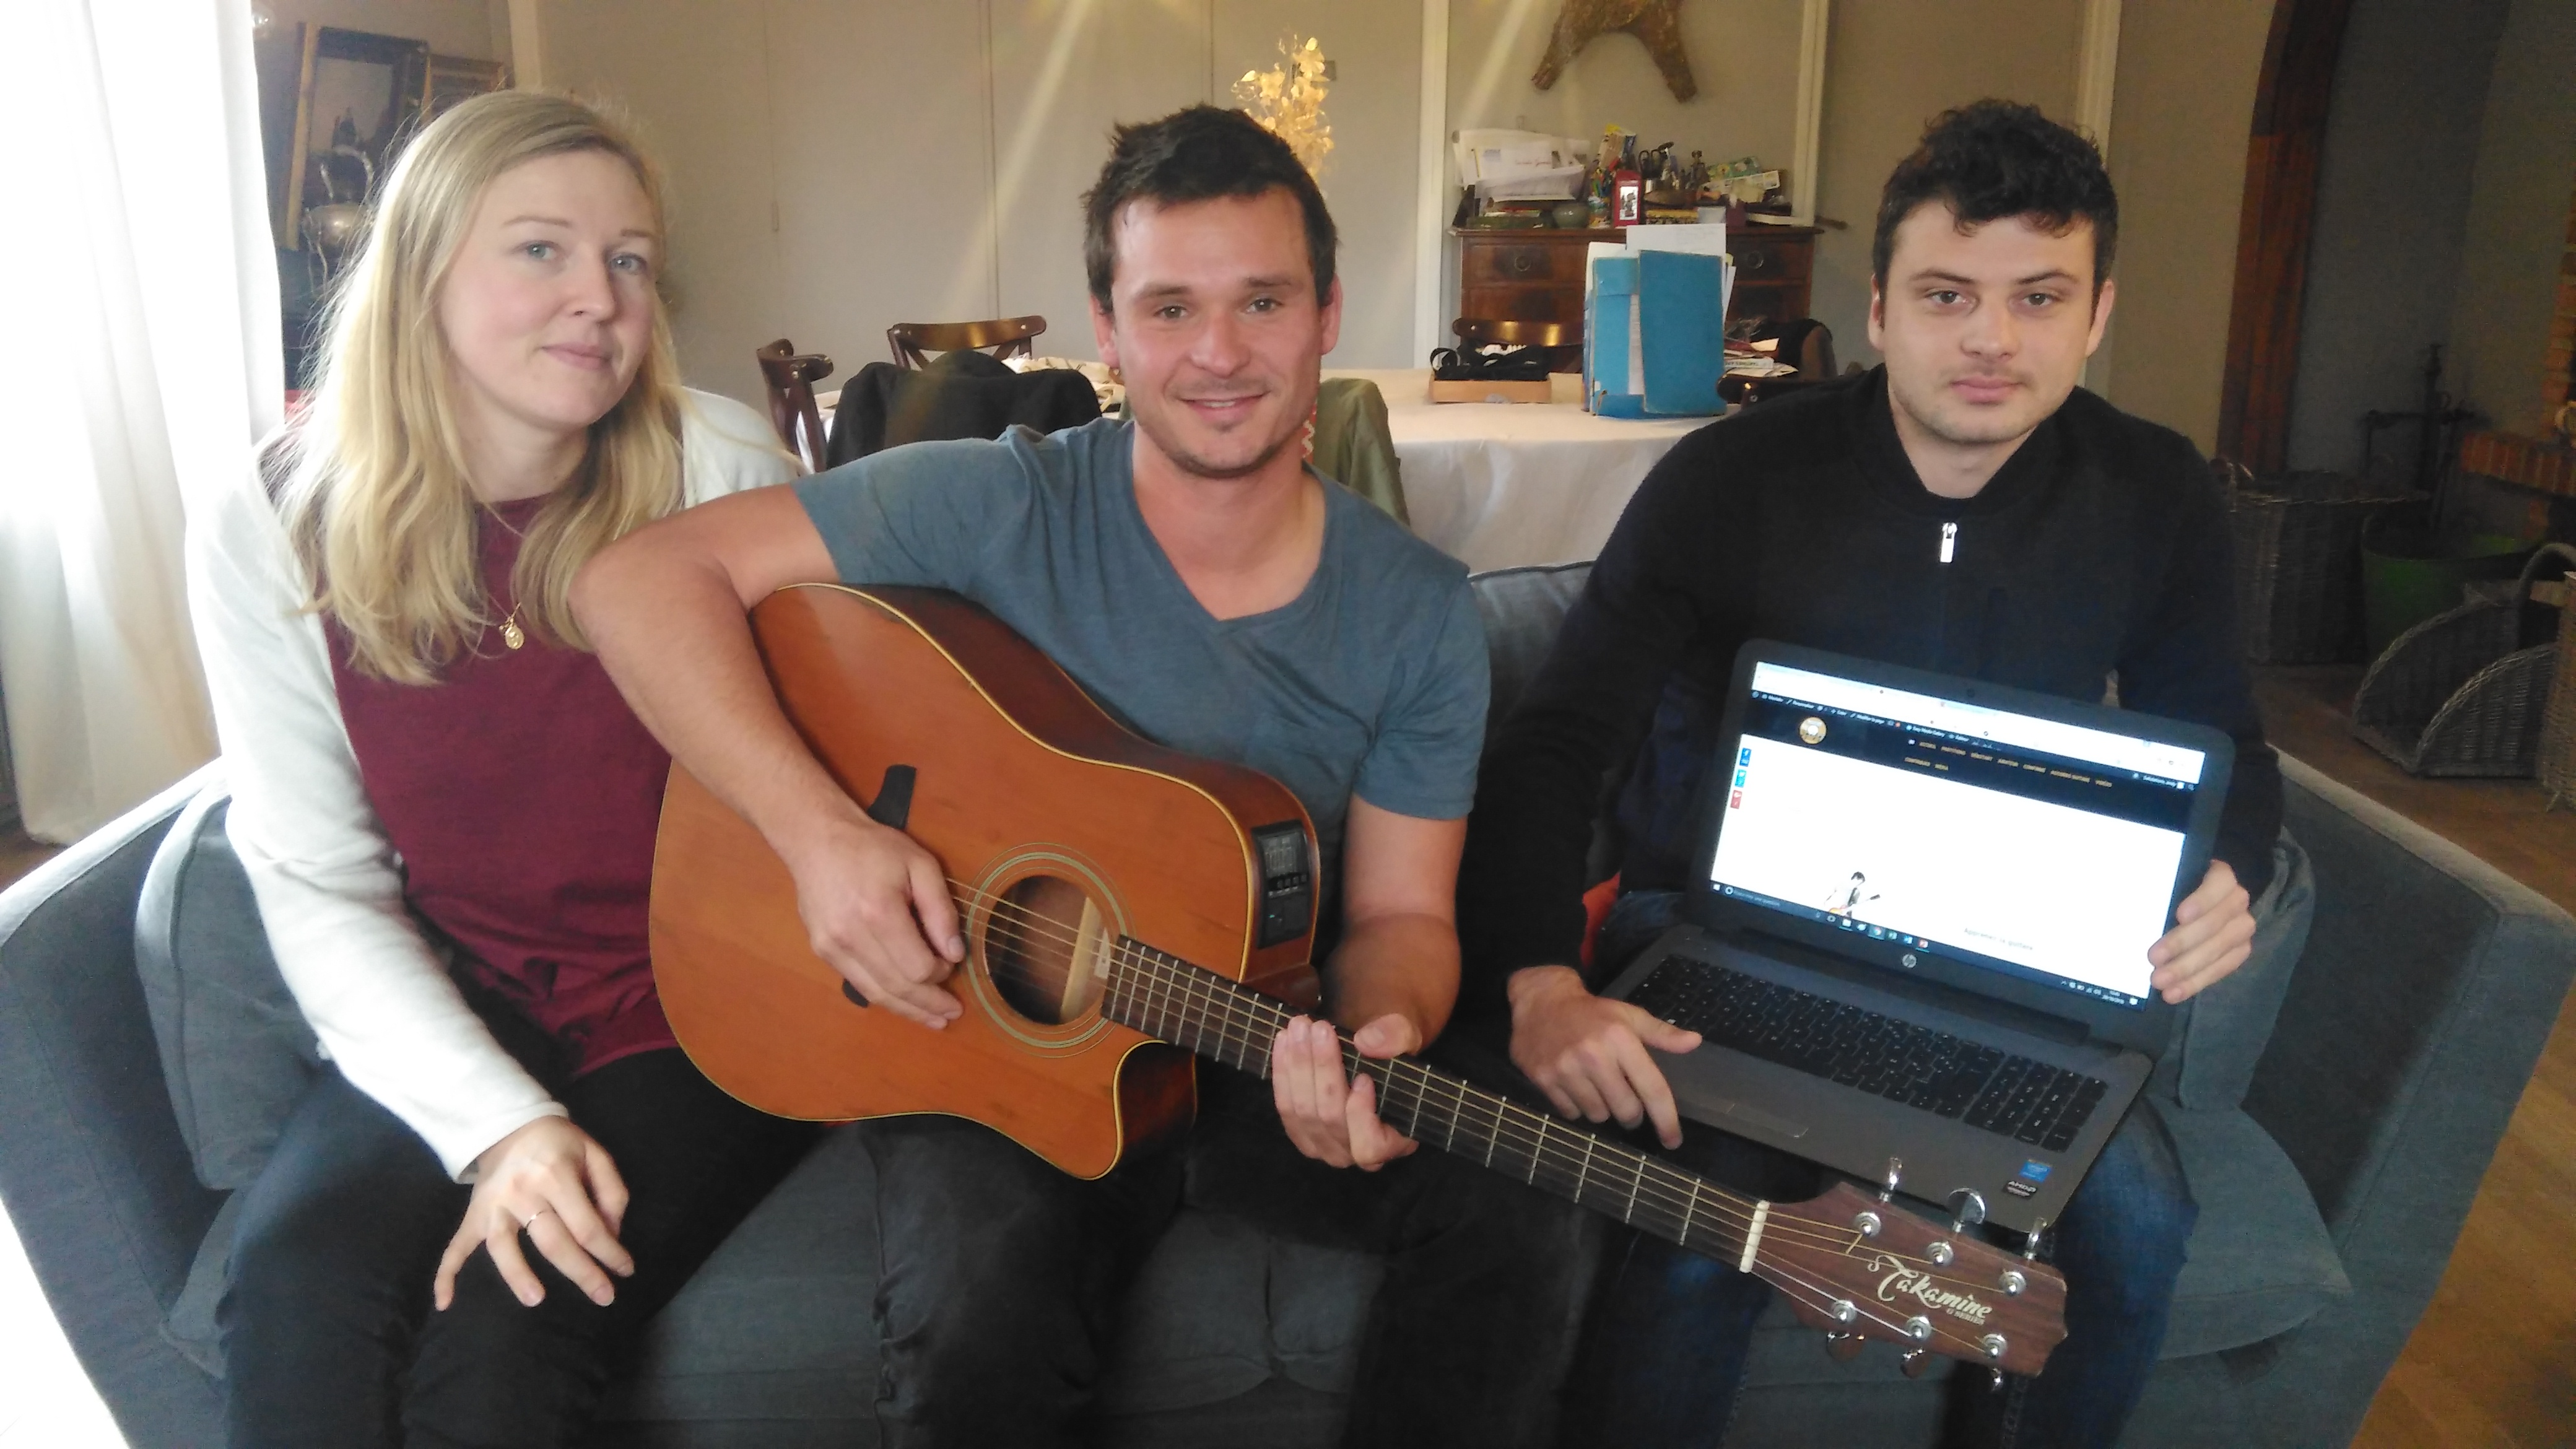 De jeunes berckois ont créé un site internet pour apprendre à jouer de la guitare ! 